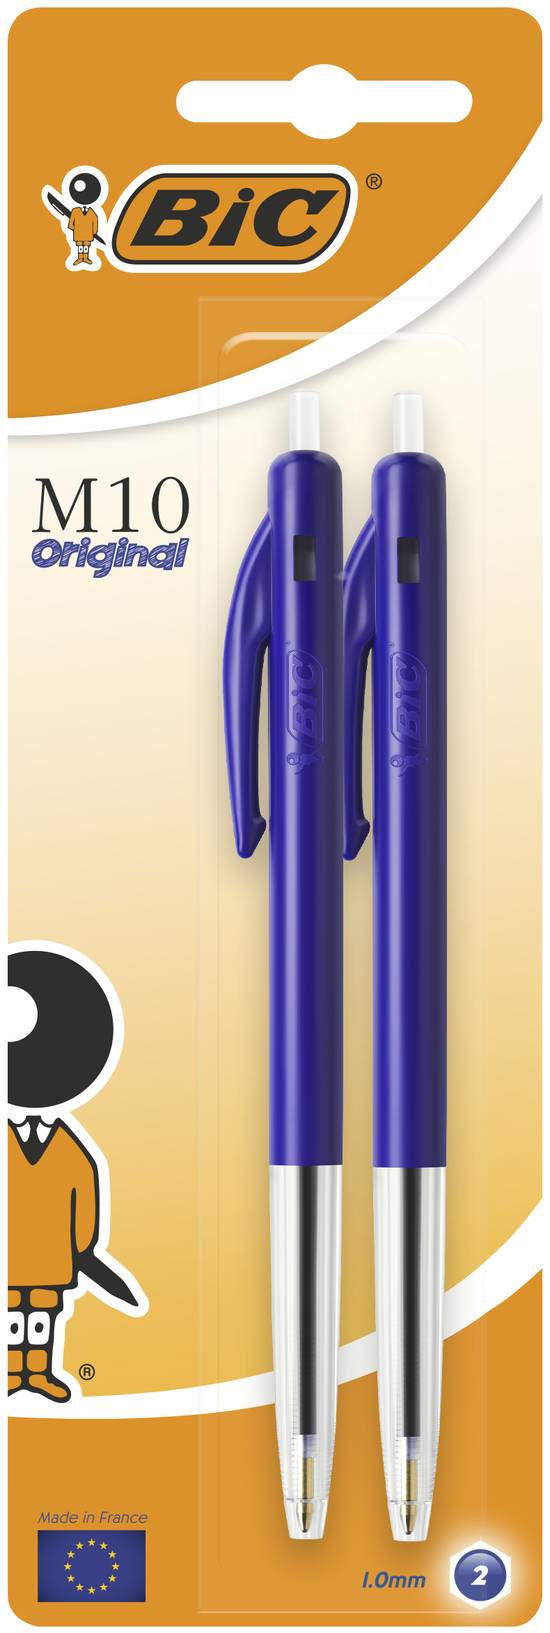 Bic - M10 original stylos-bille rétractables pointe moyenne (1,0 mm) bleu, 2 pcs